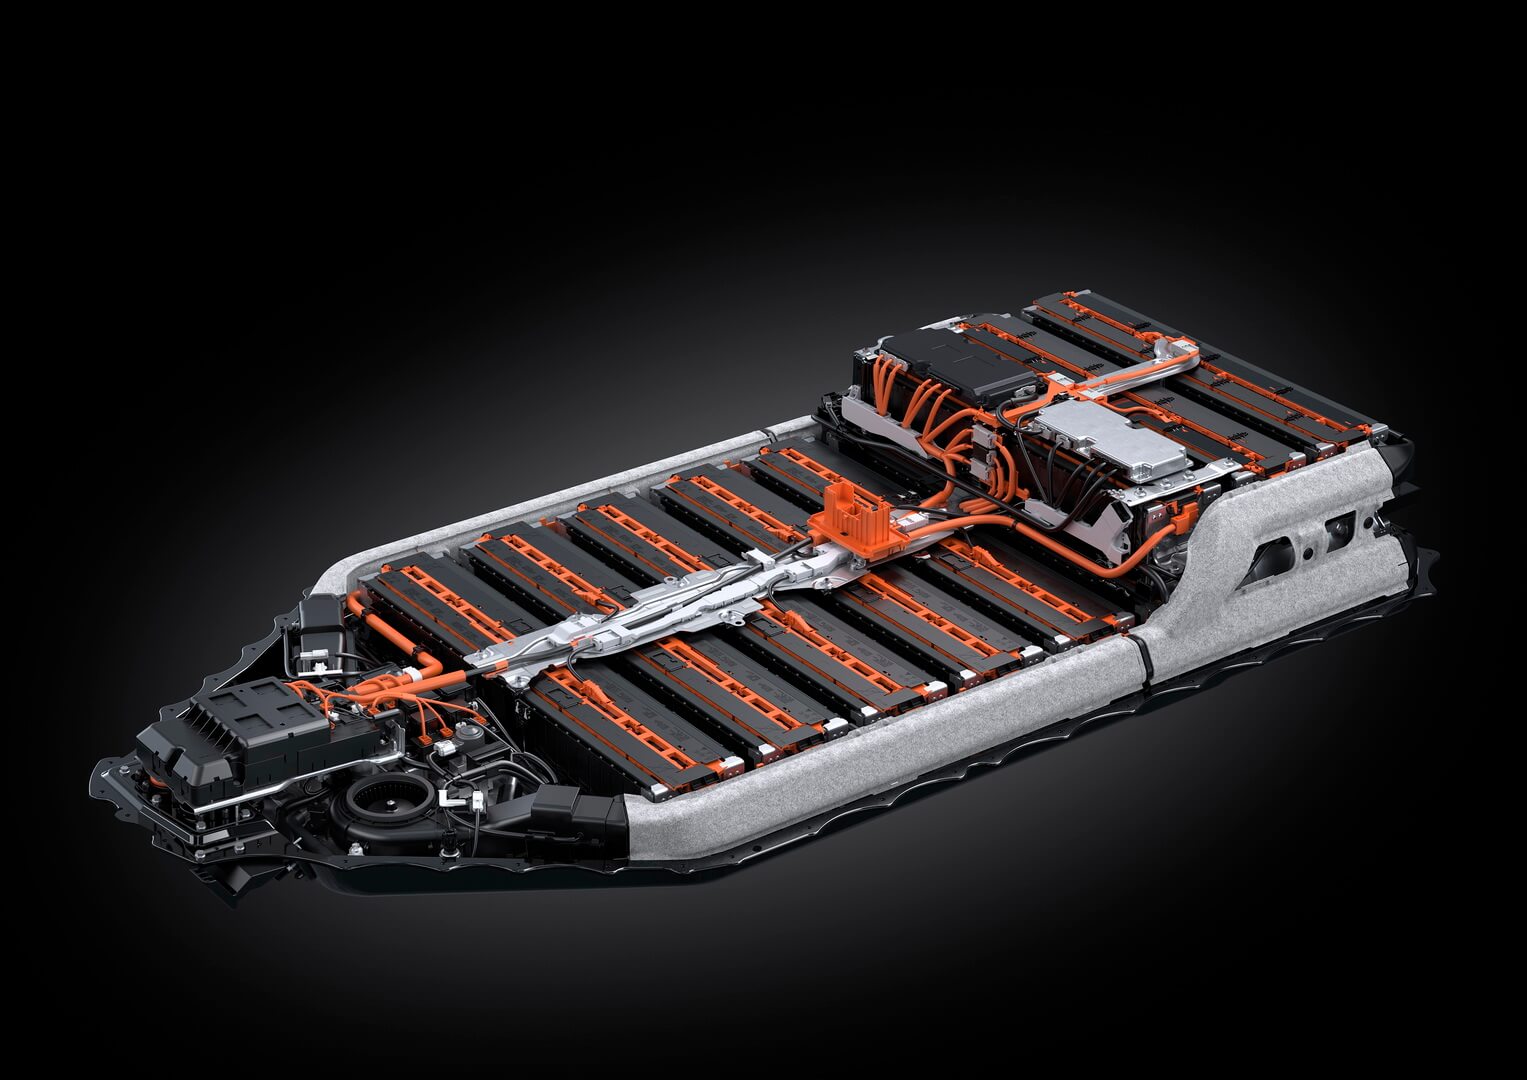 Аккумуляторная батарея Lexus UX 300e получила систему управления температурой